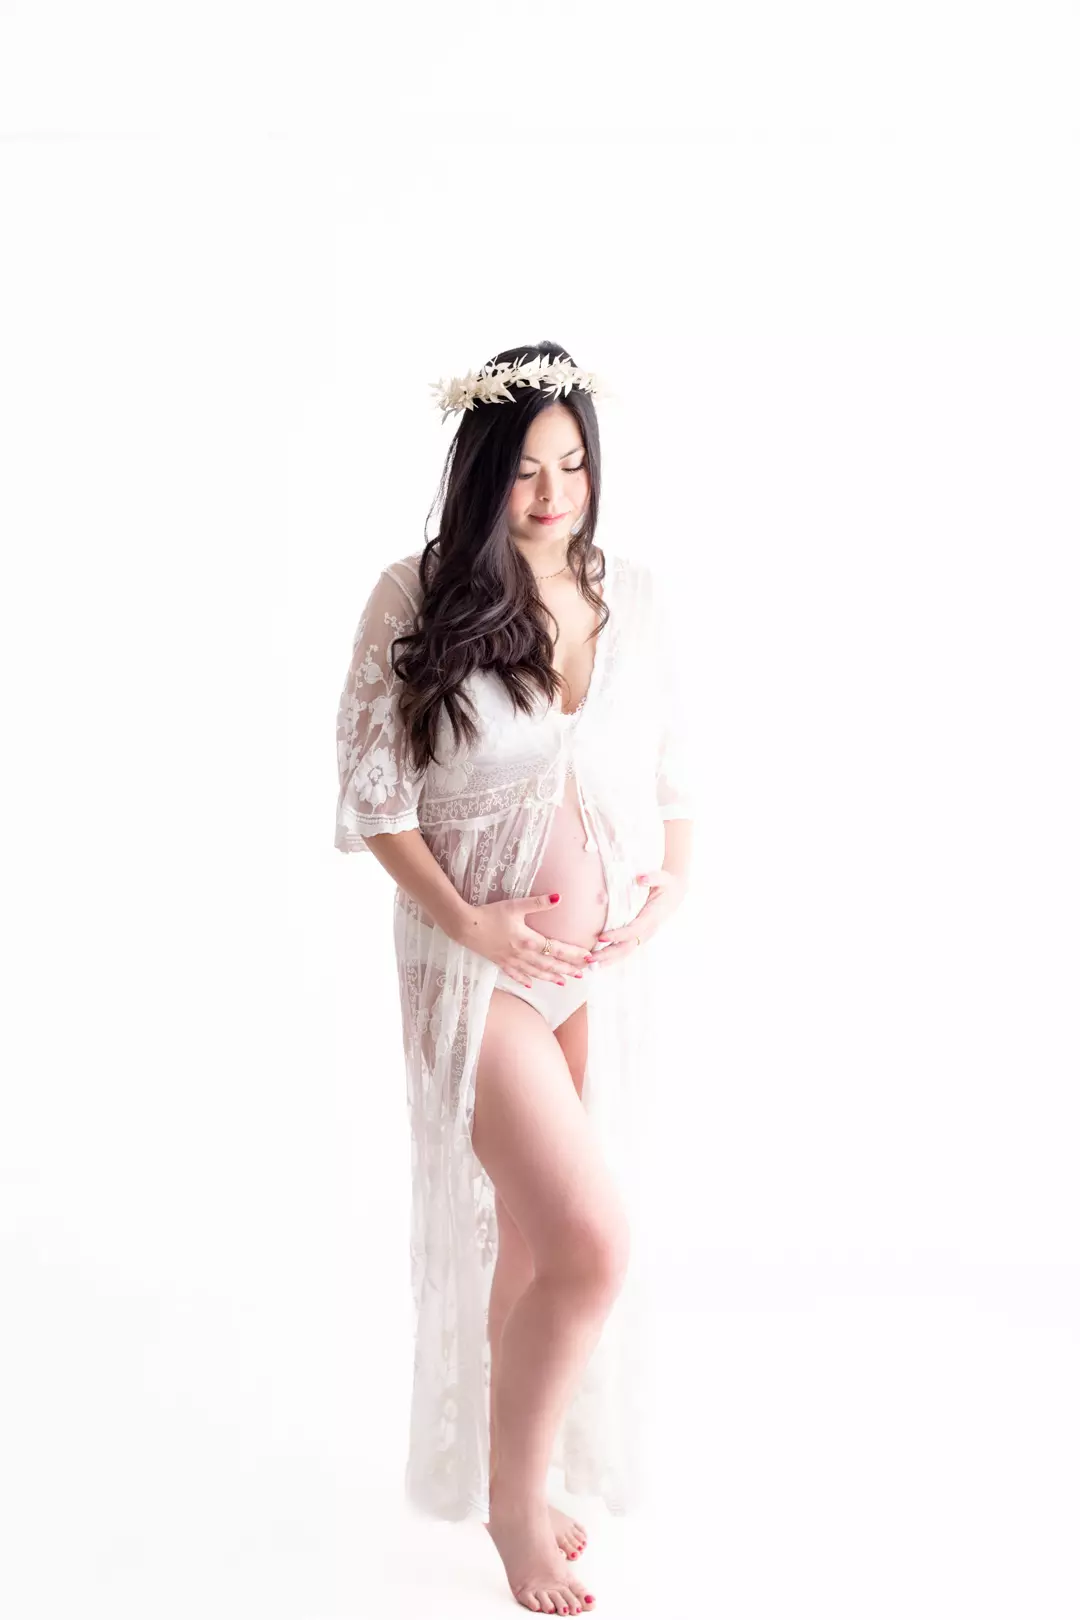 Séance photo portrait d'une femme enceinte avec kimono en dentelle et couronne de fleurs